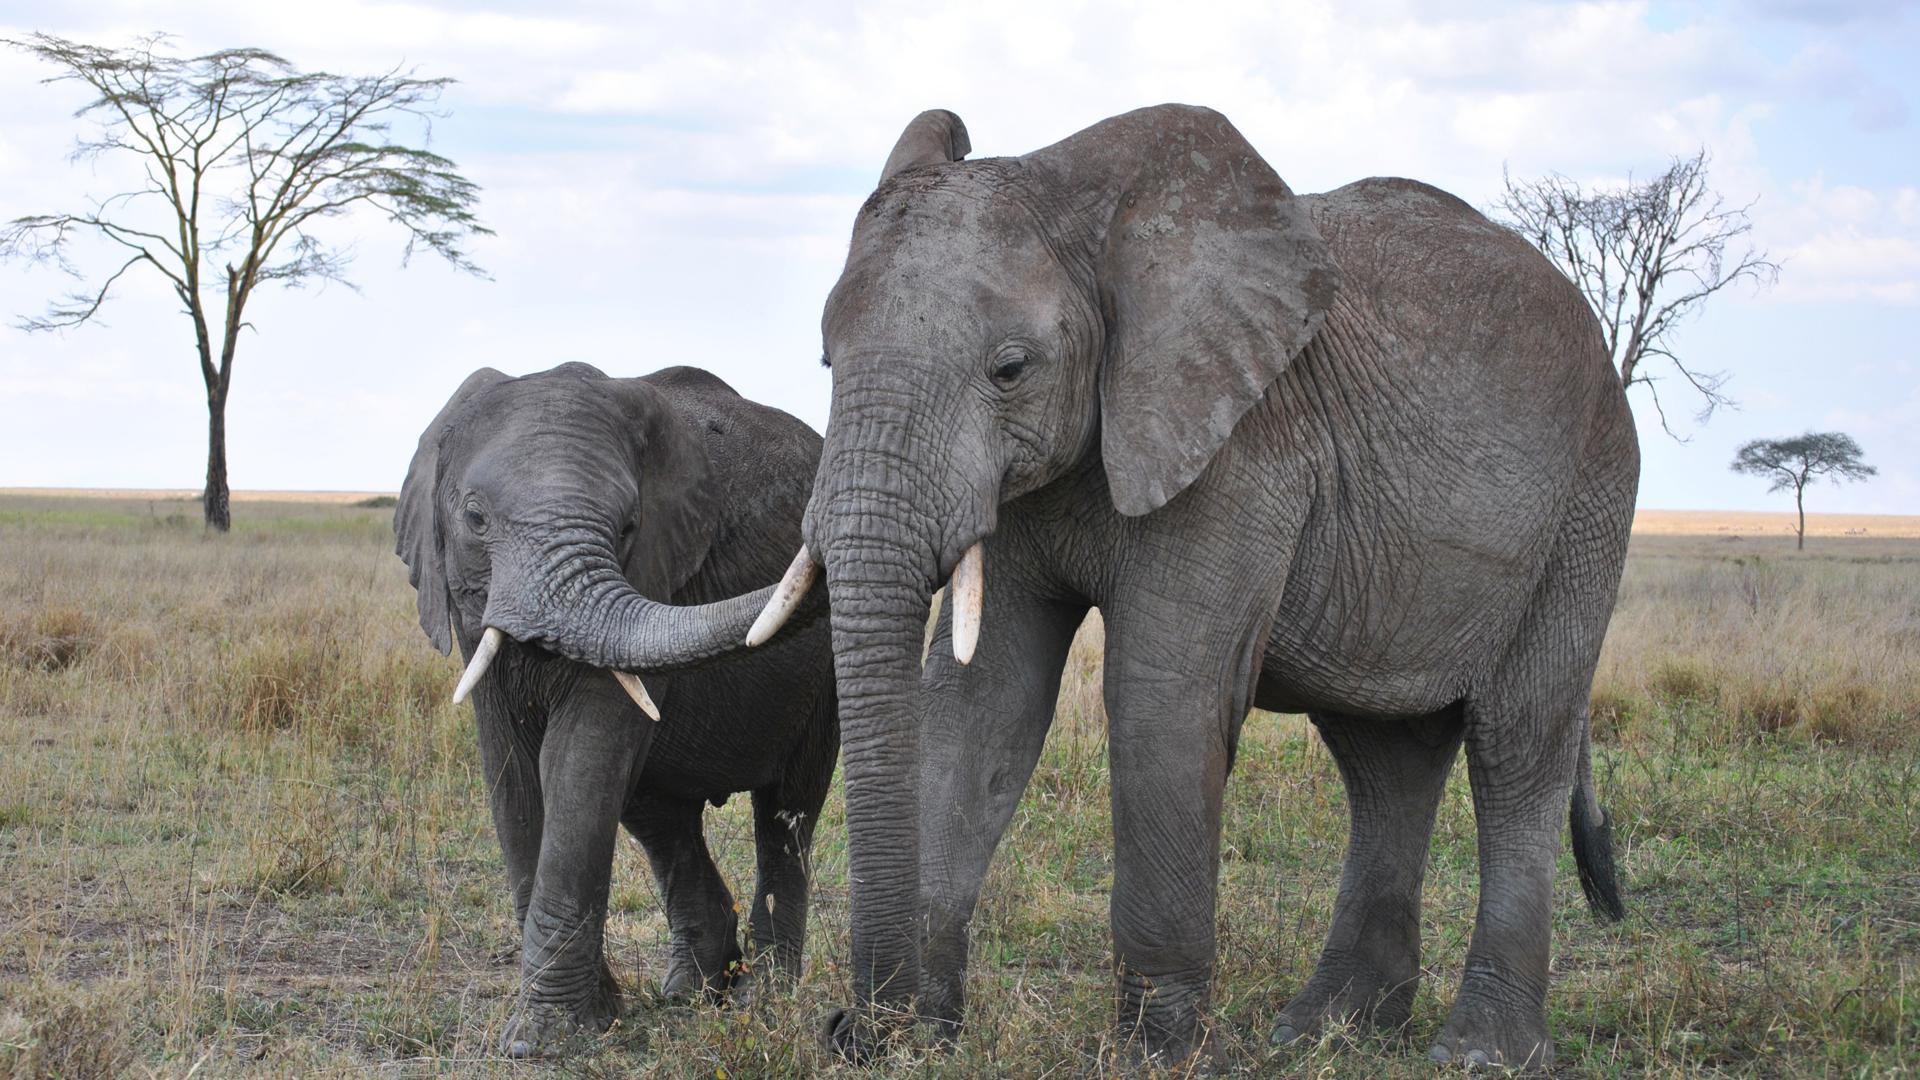 壁纸1680×1050大尺寸世界各地动物壁纸精选 第三辑 African Elephants Masai Mara Kenya 马赛马拉 非洲 ...